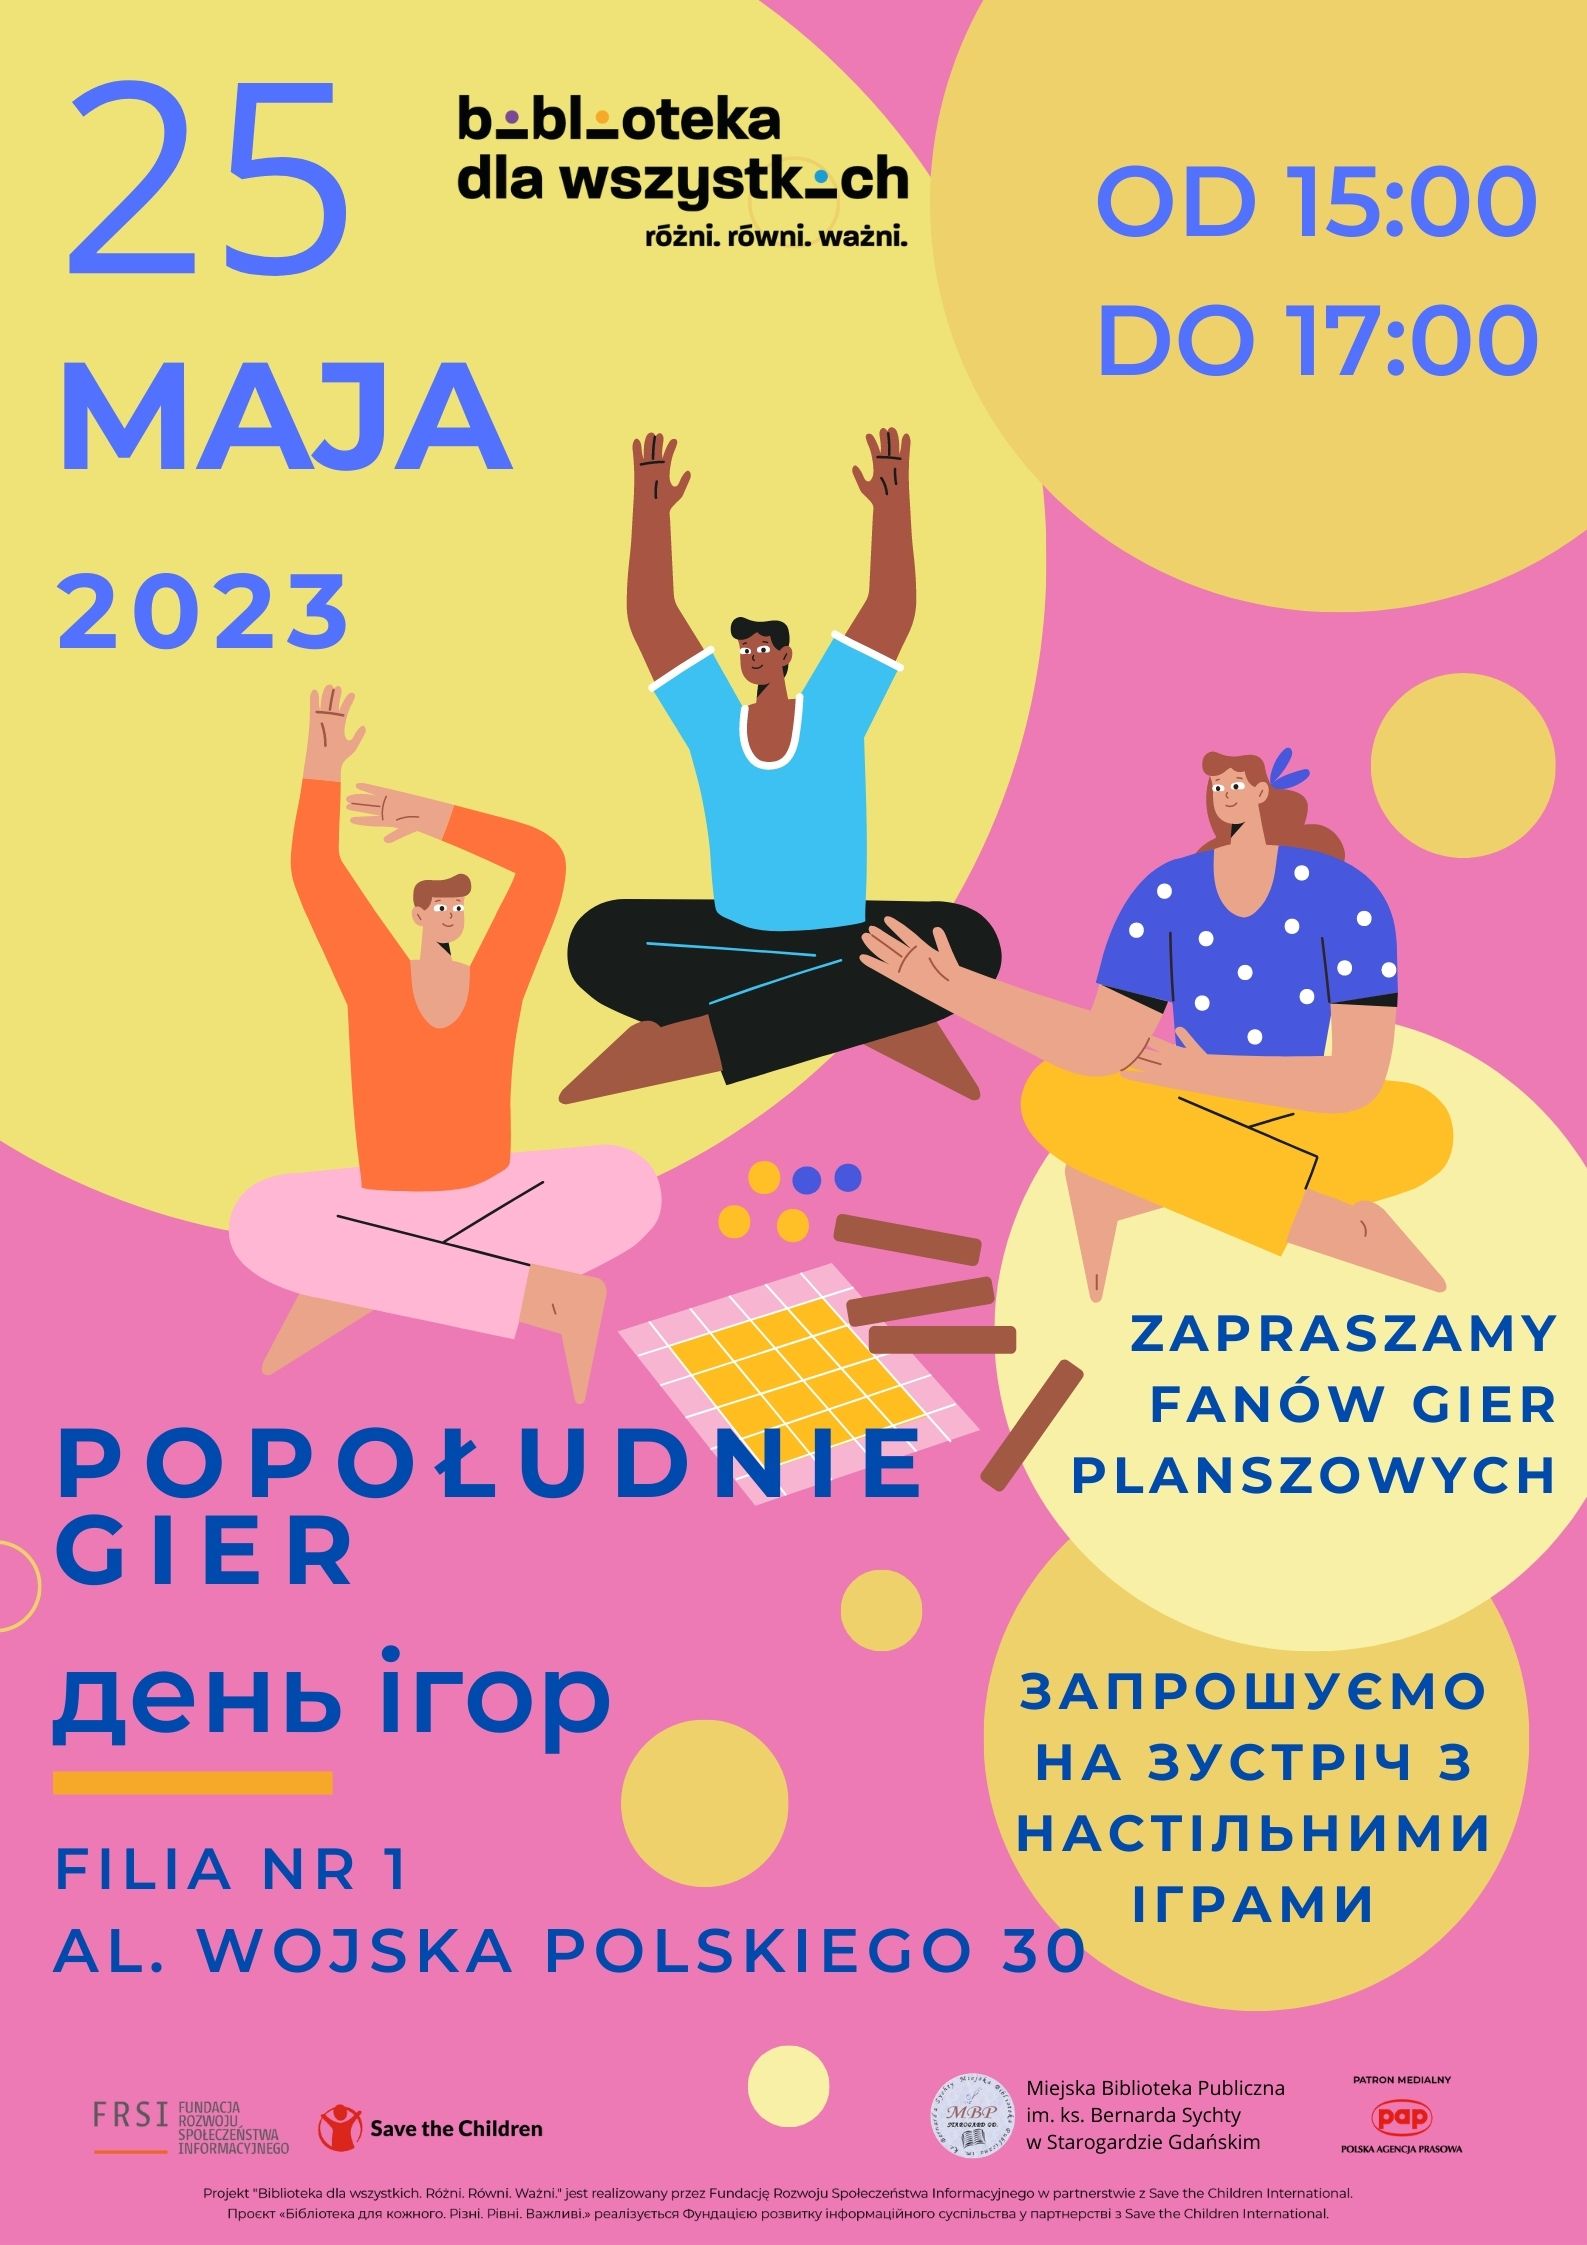 Plakat informujący o zajęciach popołudnie gier 25 maja 2023 roku o godzinie 15:00 w Filii nr 1 Miejskiej Biblioteki Publicznej w Starogardzie Gdańskim (al. Wojska Polskiego 30).